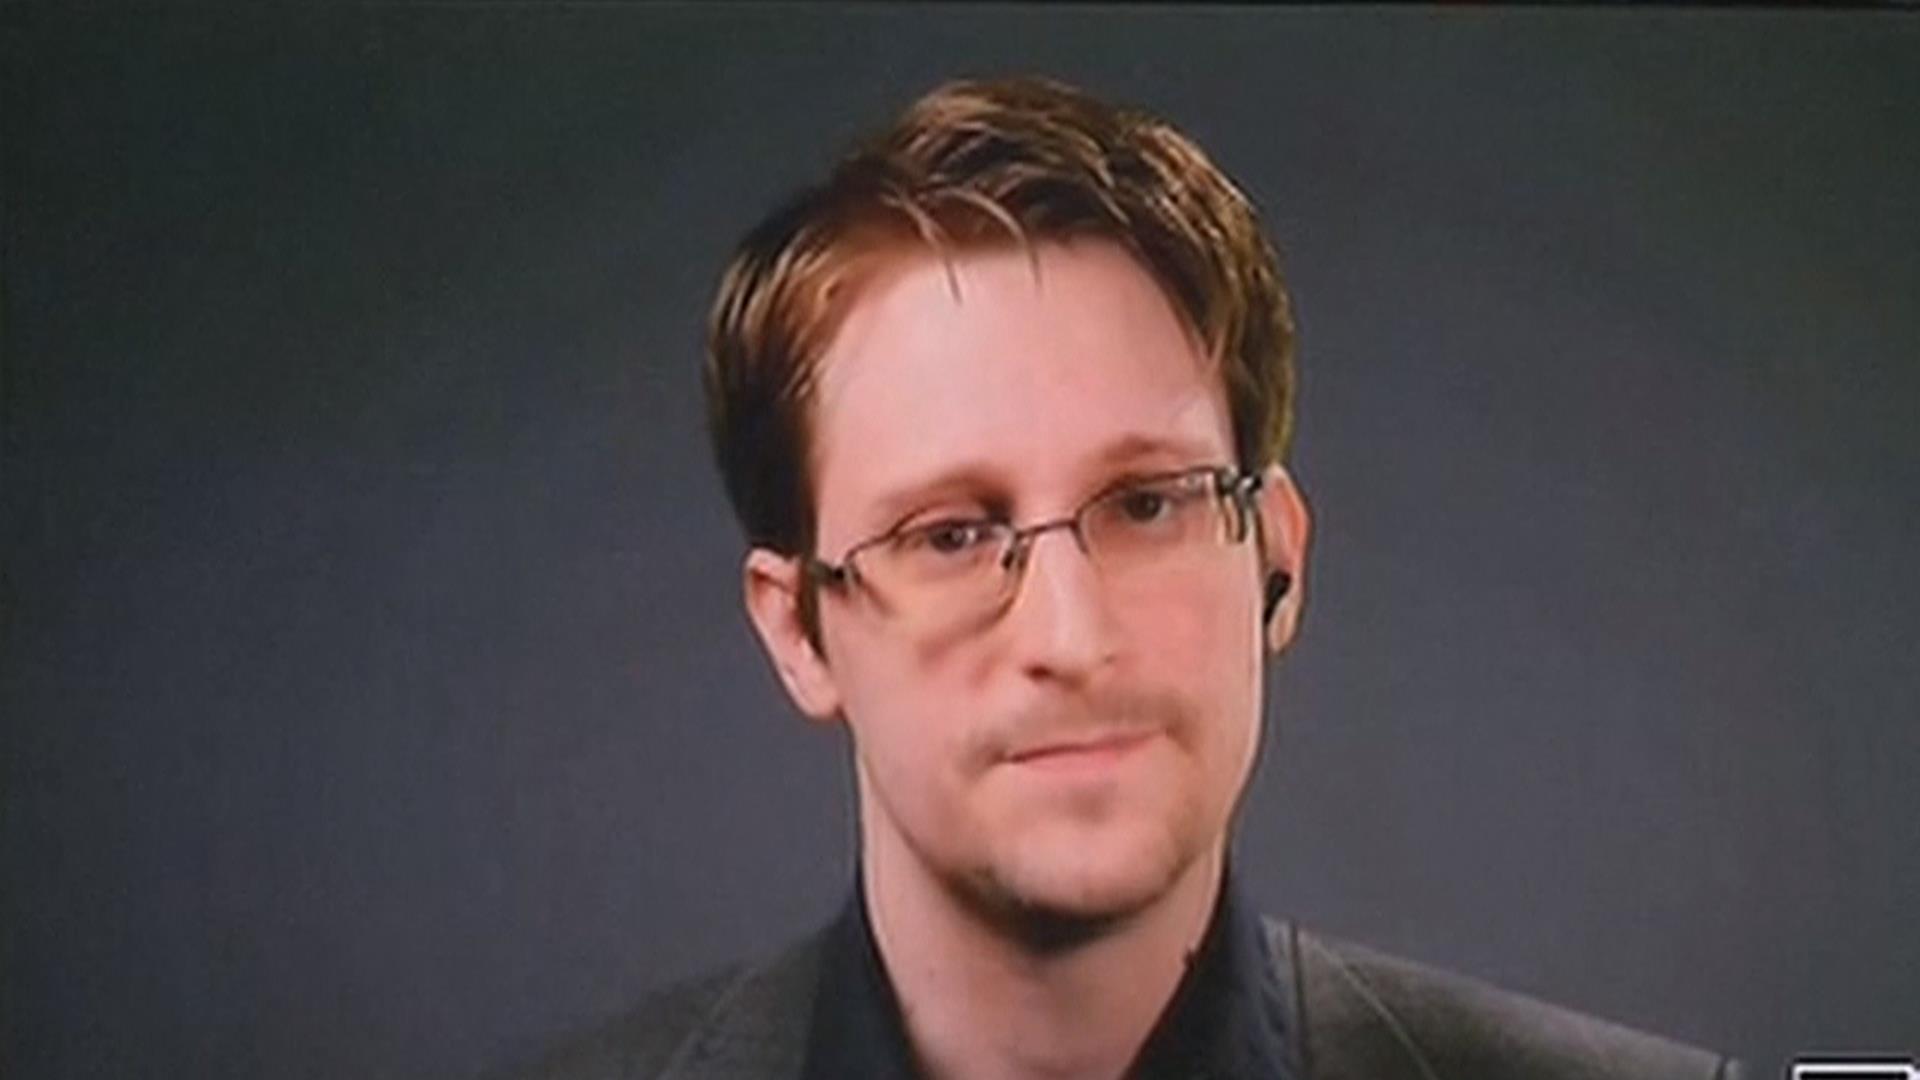 Edward Snowden Makes Case for Pardon